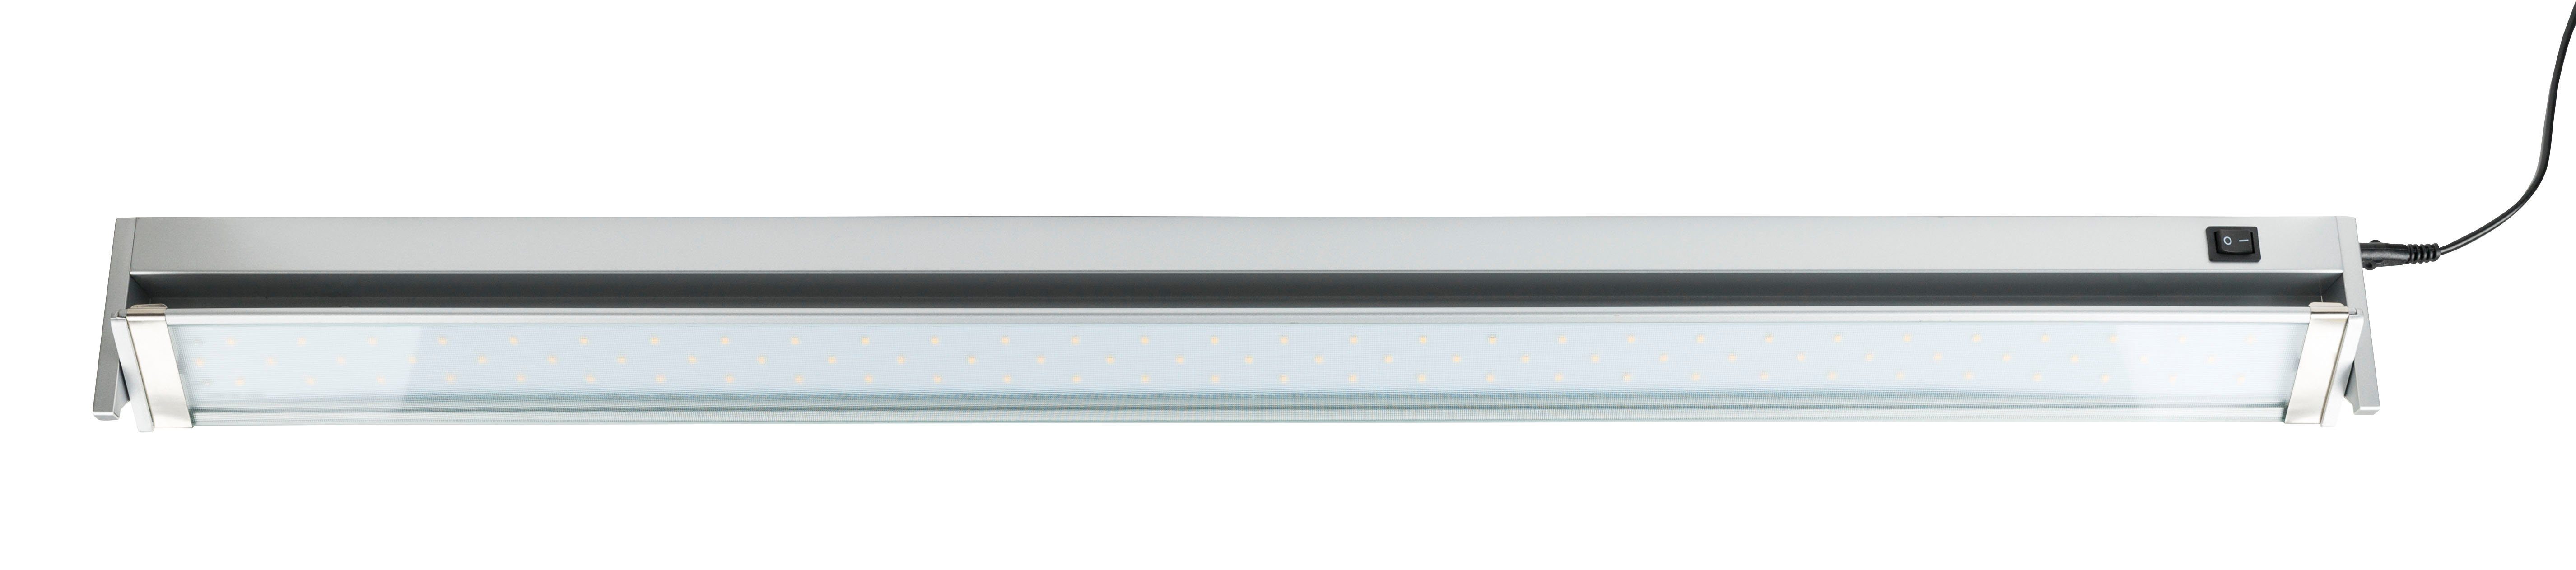 schwenkbar 80 integriert, HEITRONIC LED Gute mit Küchenbeleuchtung, Warmweiß, Ra Schalter, Lichtleiste mit Farbwiedergabe und Küchenlampe, fest Miami,